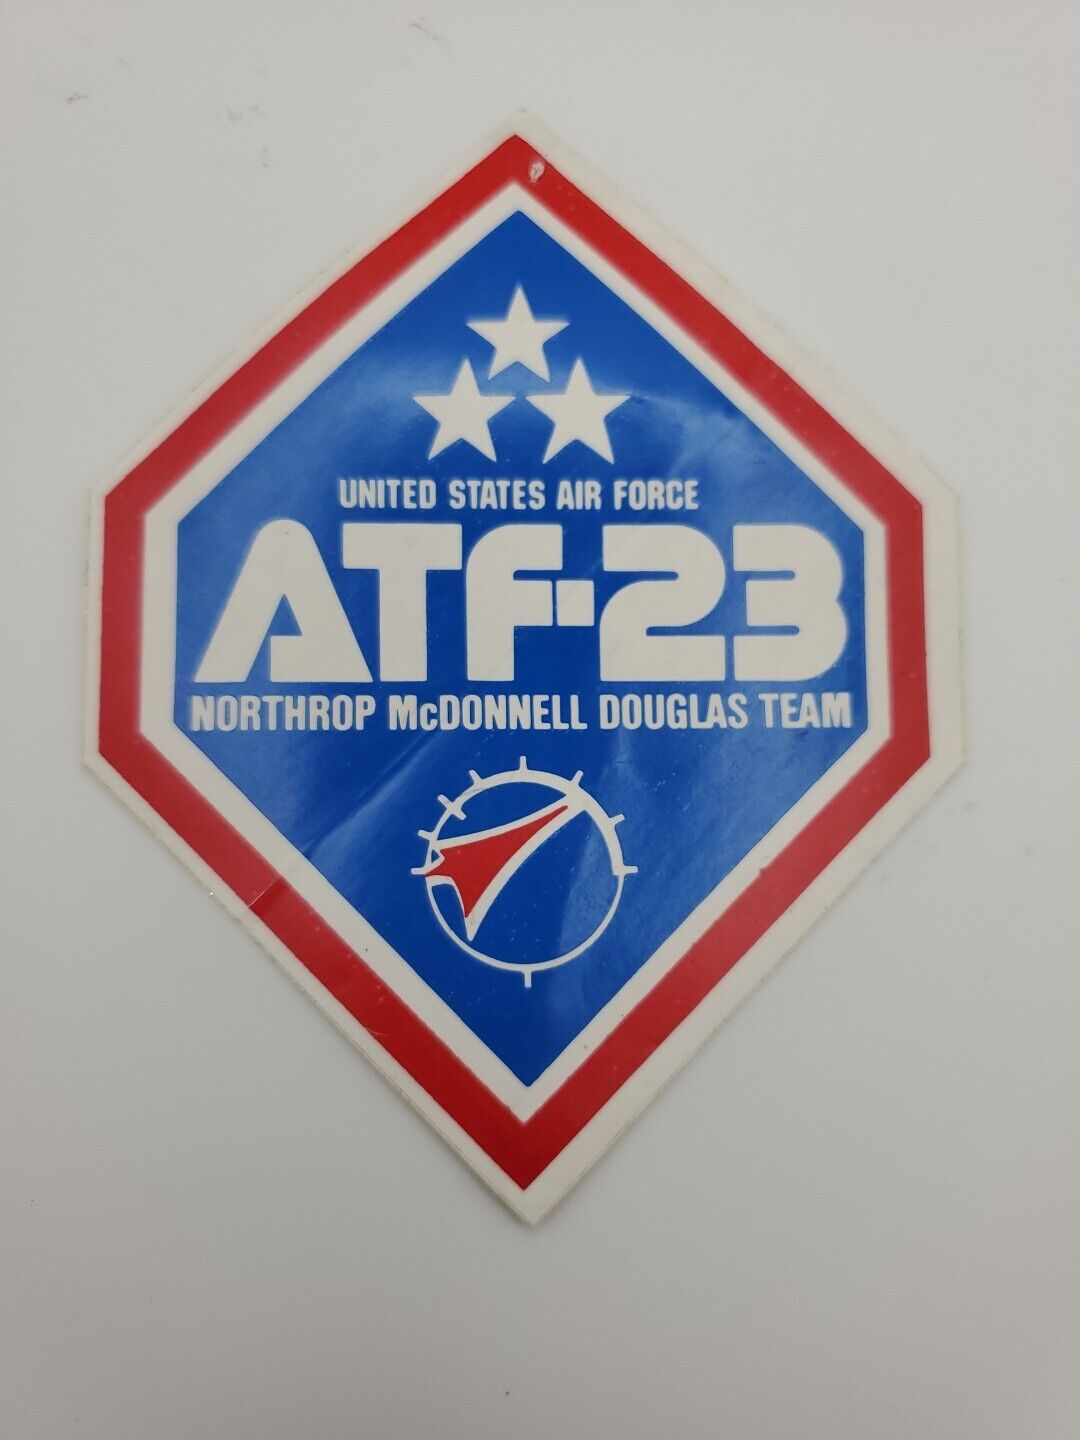 ATF-23 USAF Northrup McDonnell Douglas Team Sticker 5” X 3.75” Vintage USAF